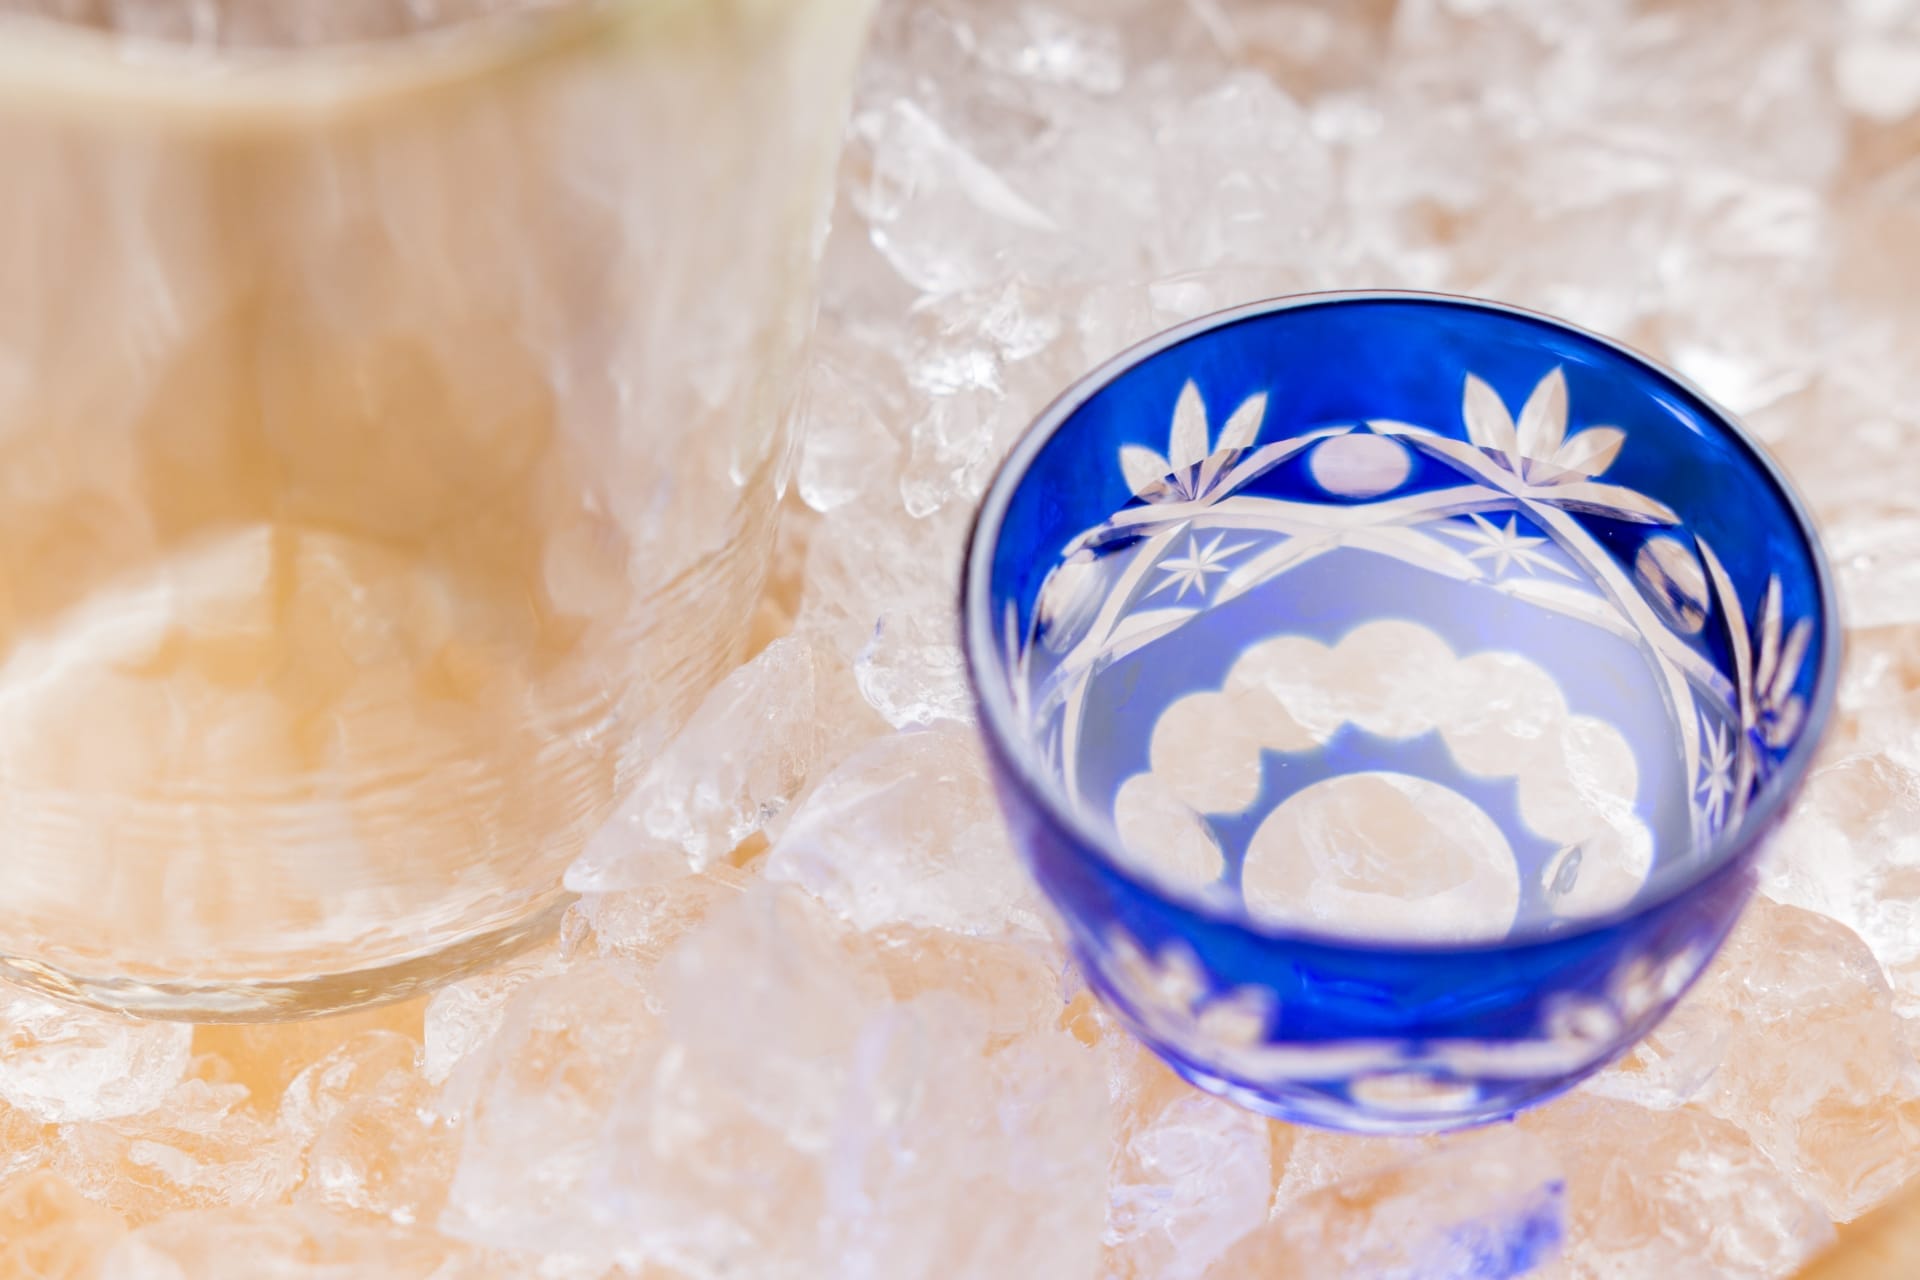 Τι είναι το shochu φτιαγμένο από sake lees;